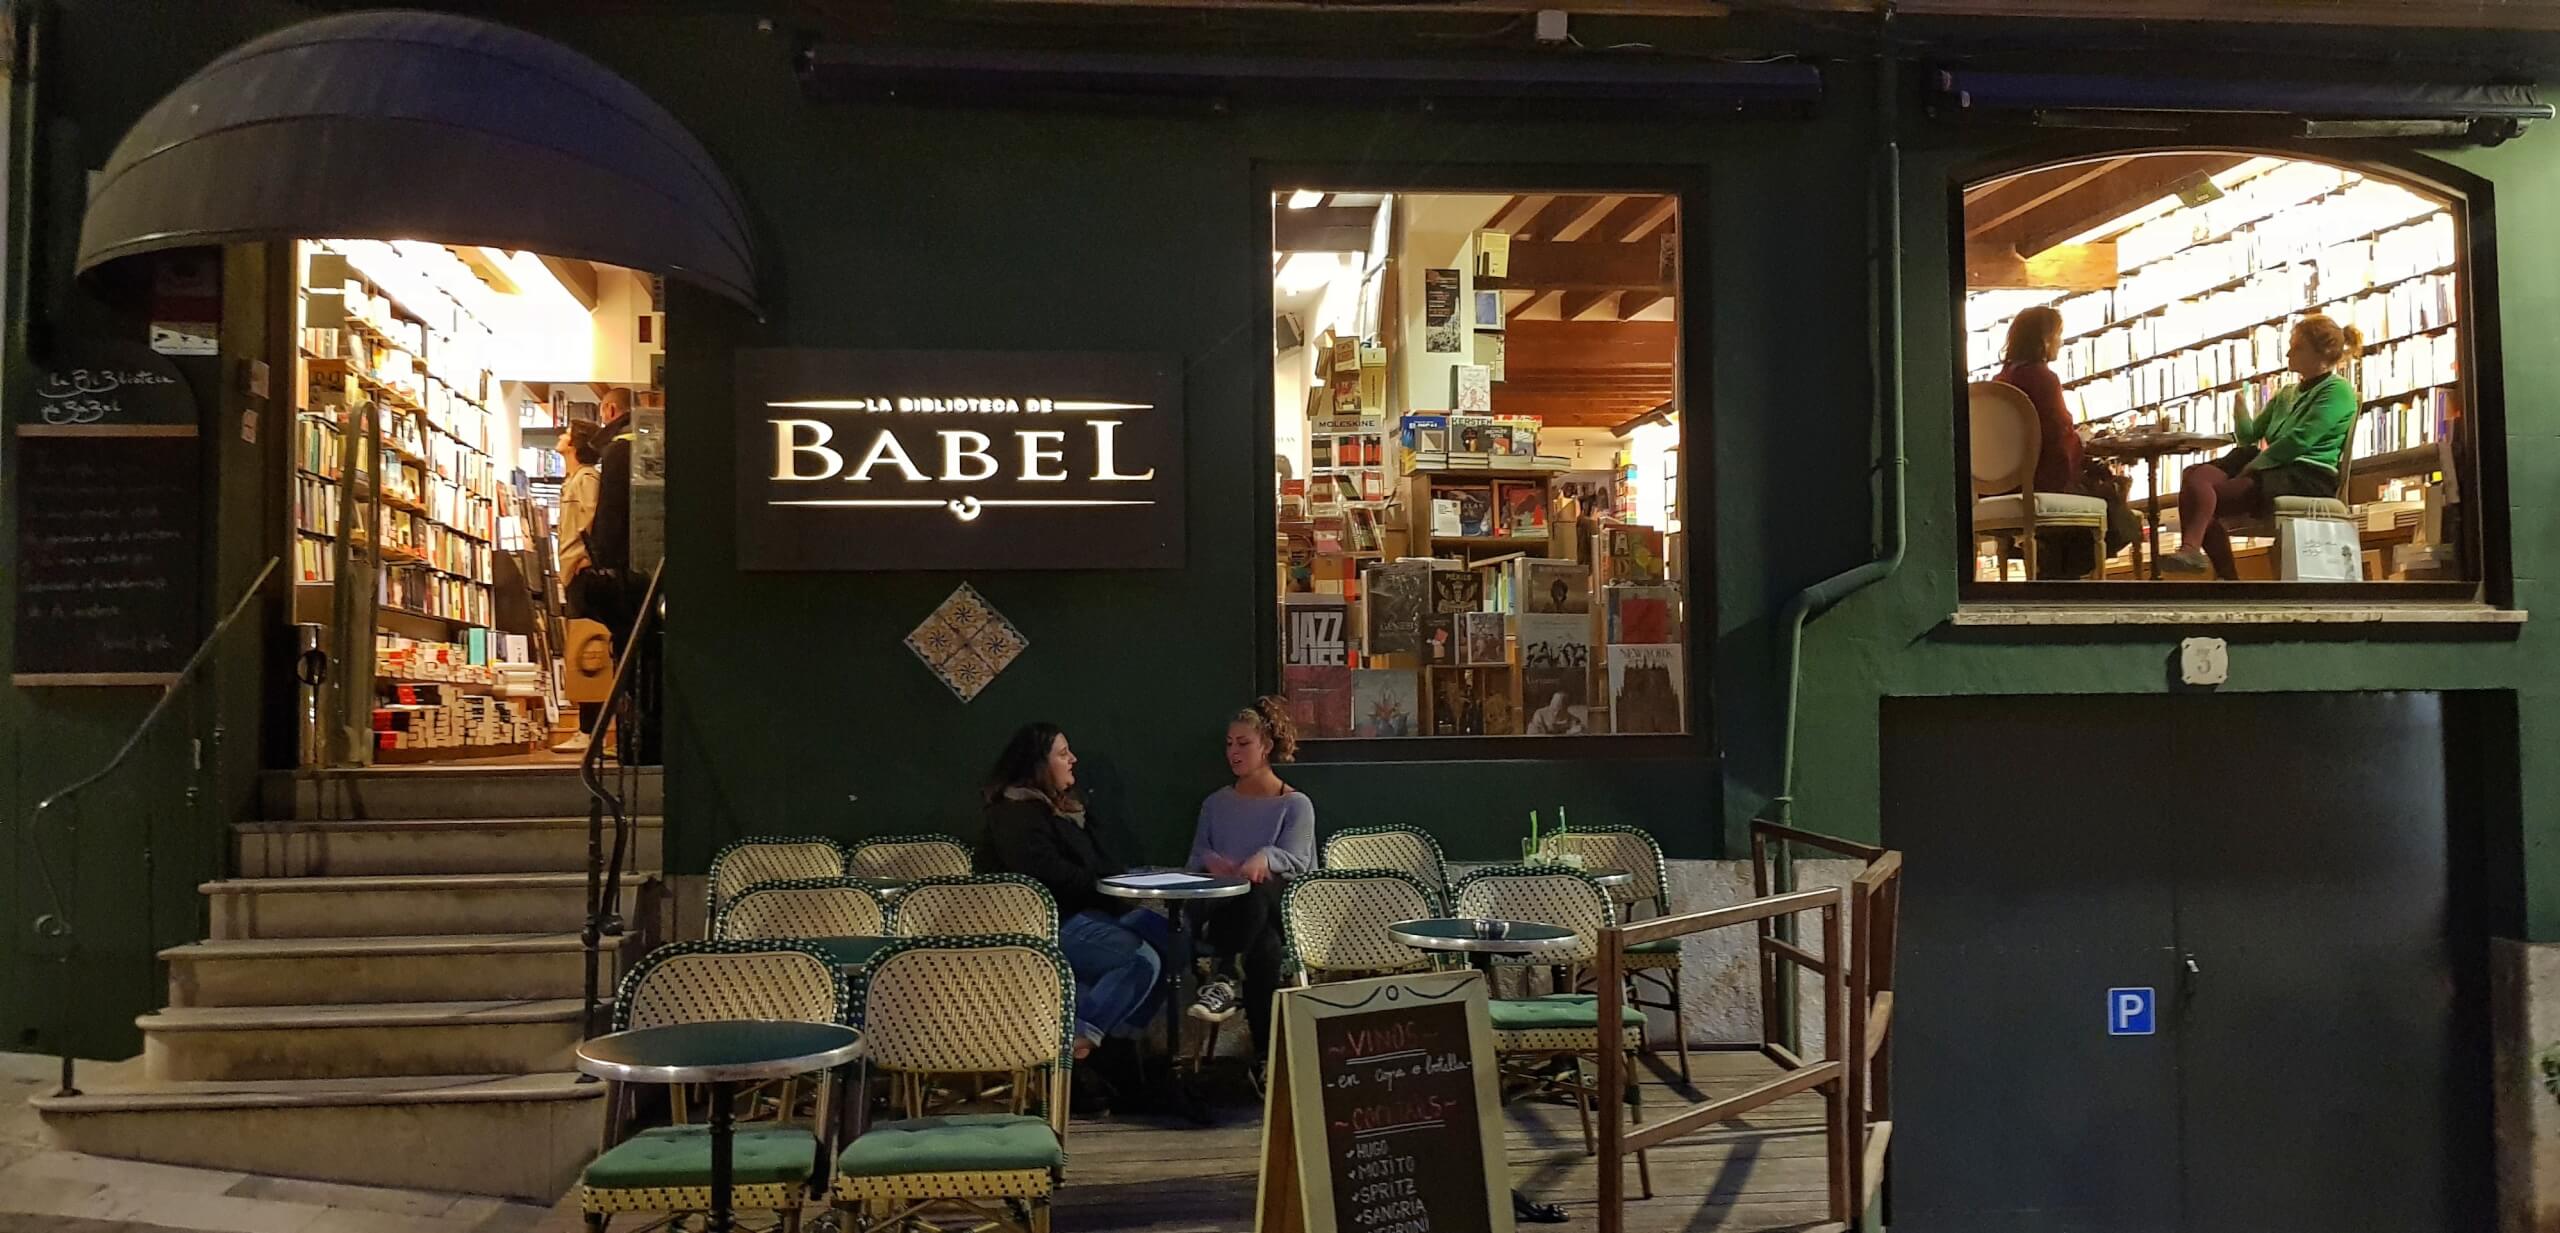 La Biblioteca de Babel i Palma, Mallorca